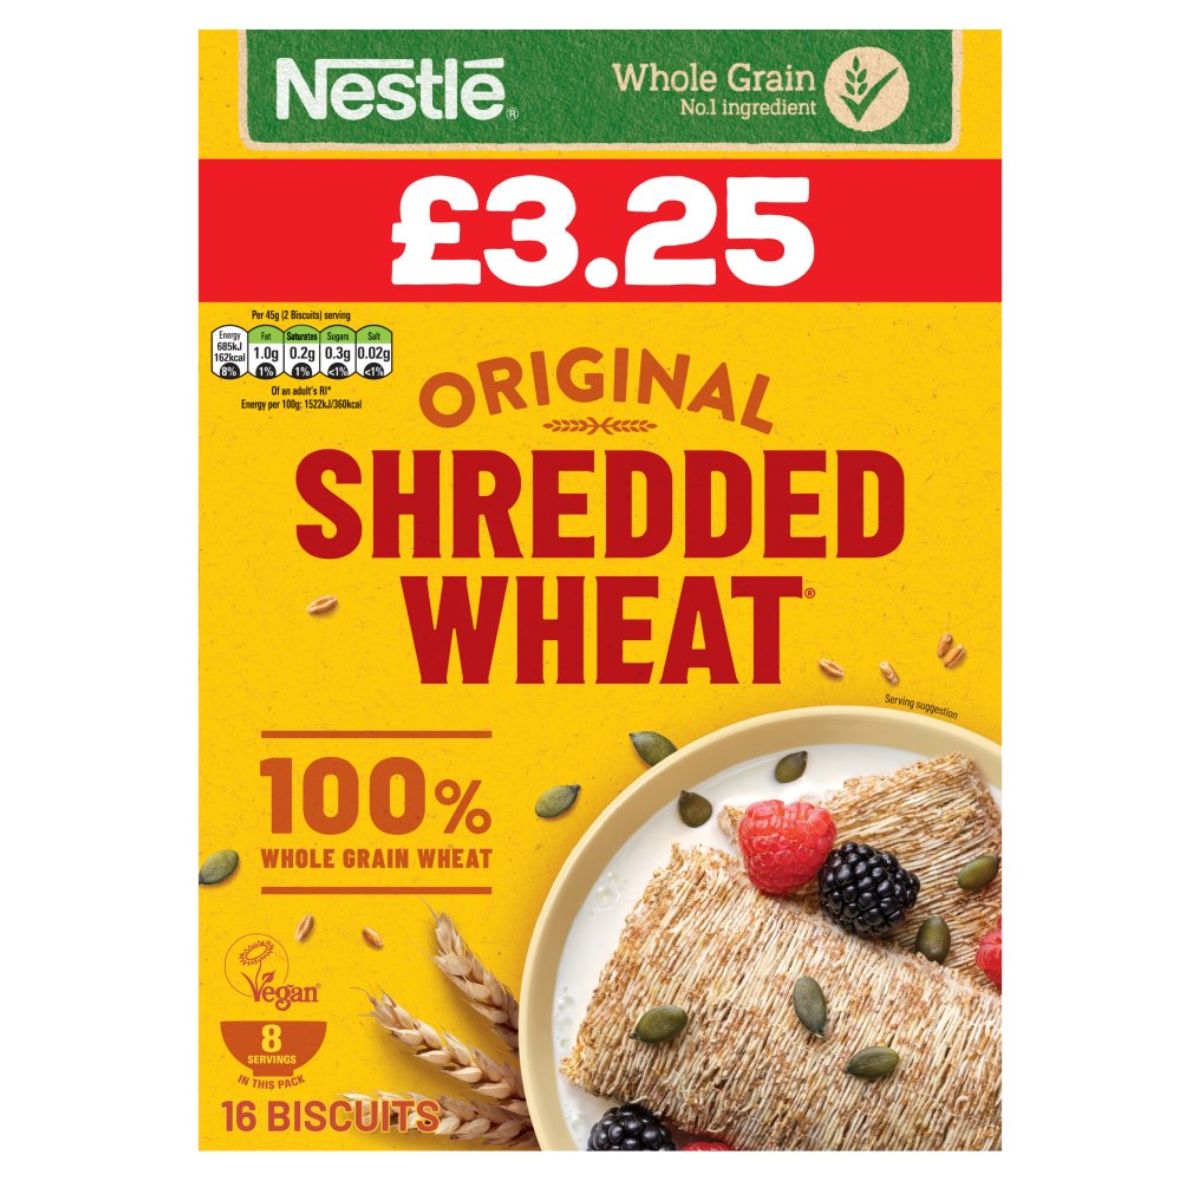 Nestle - Original Shredded Wheat - 360g.